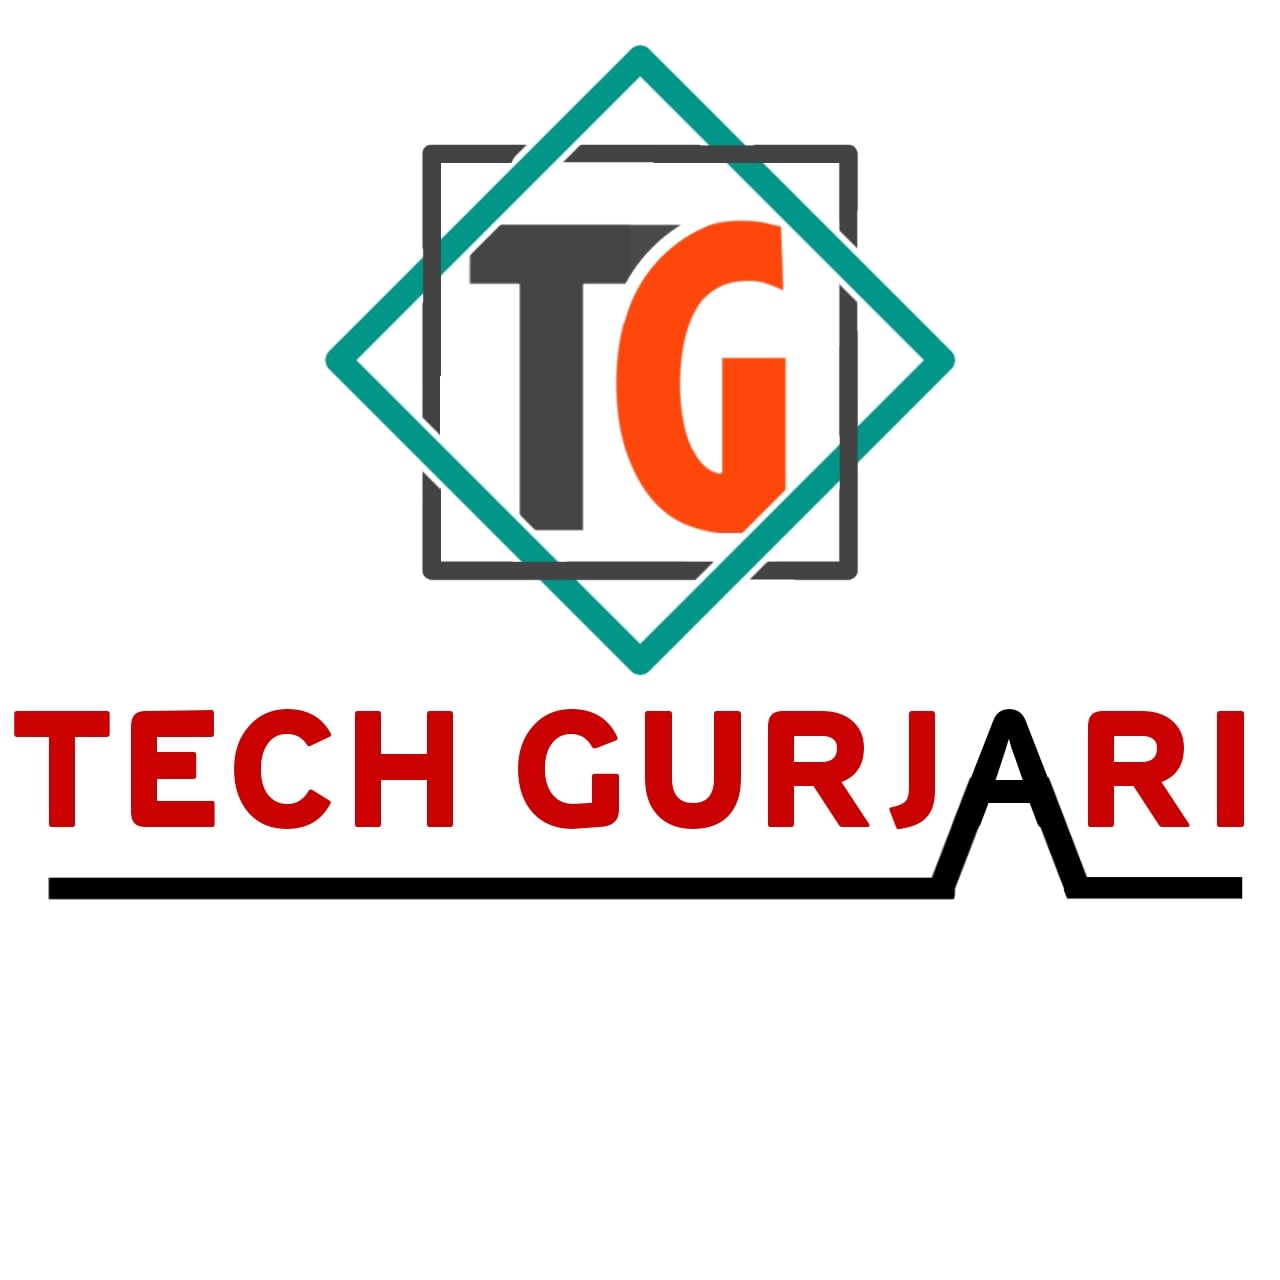 Tech Gurjari